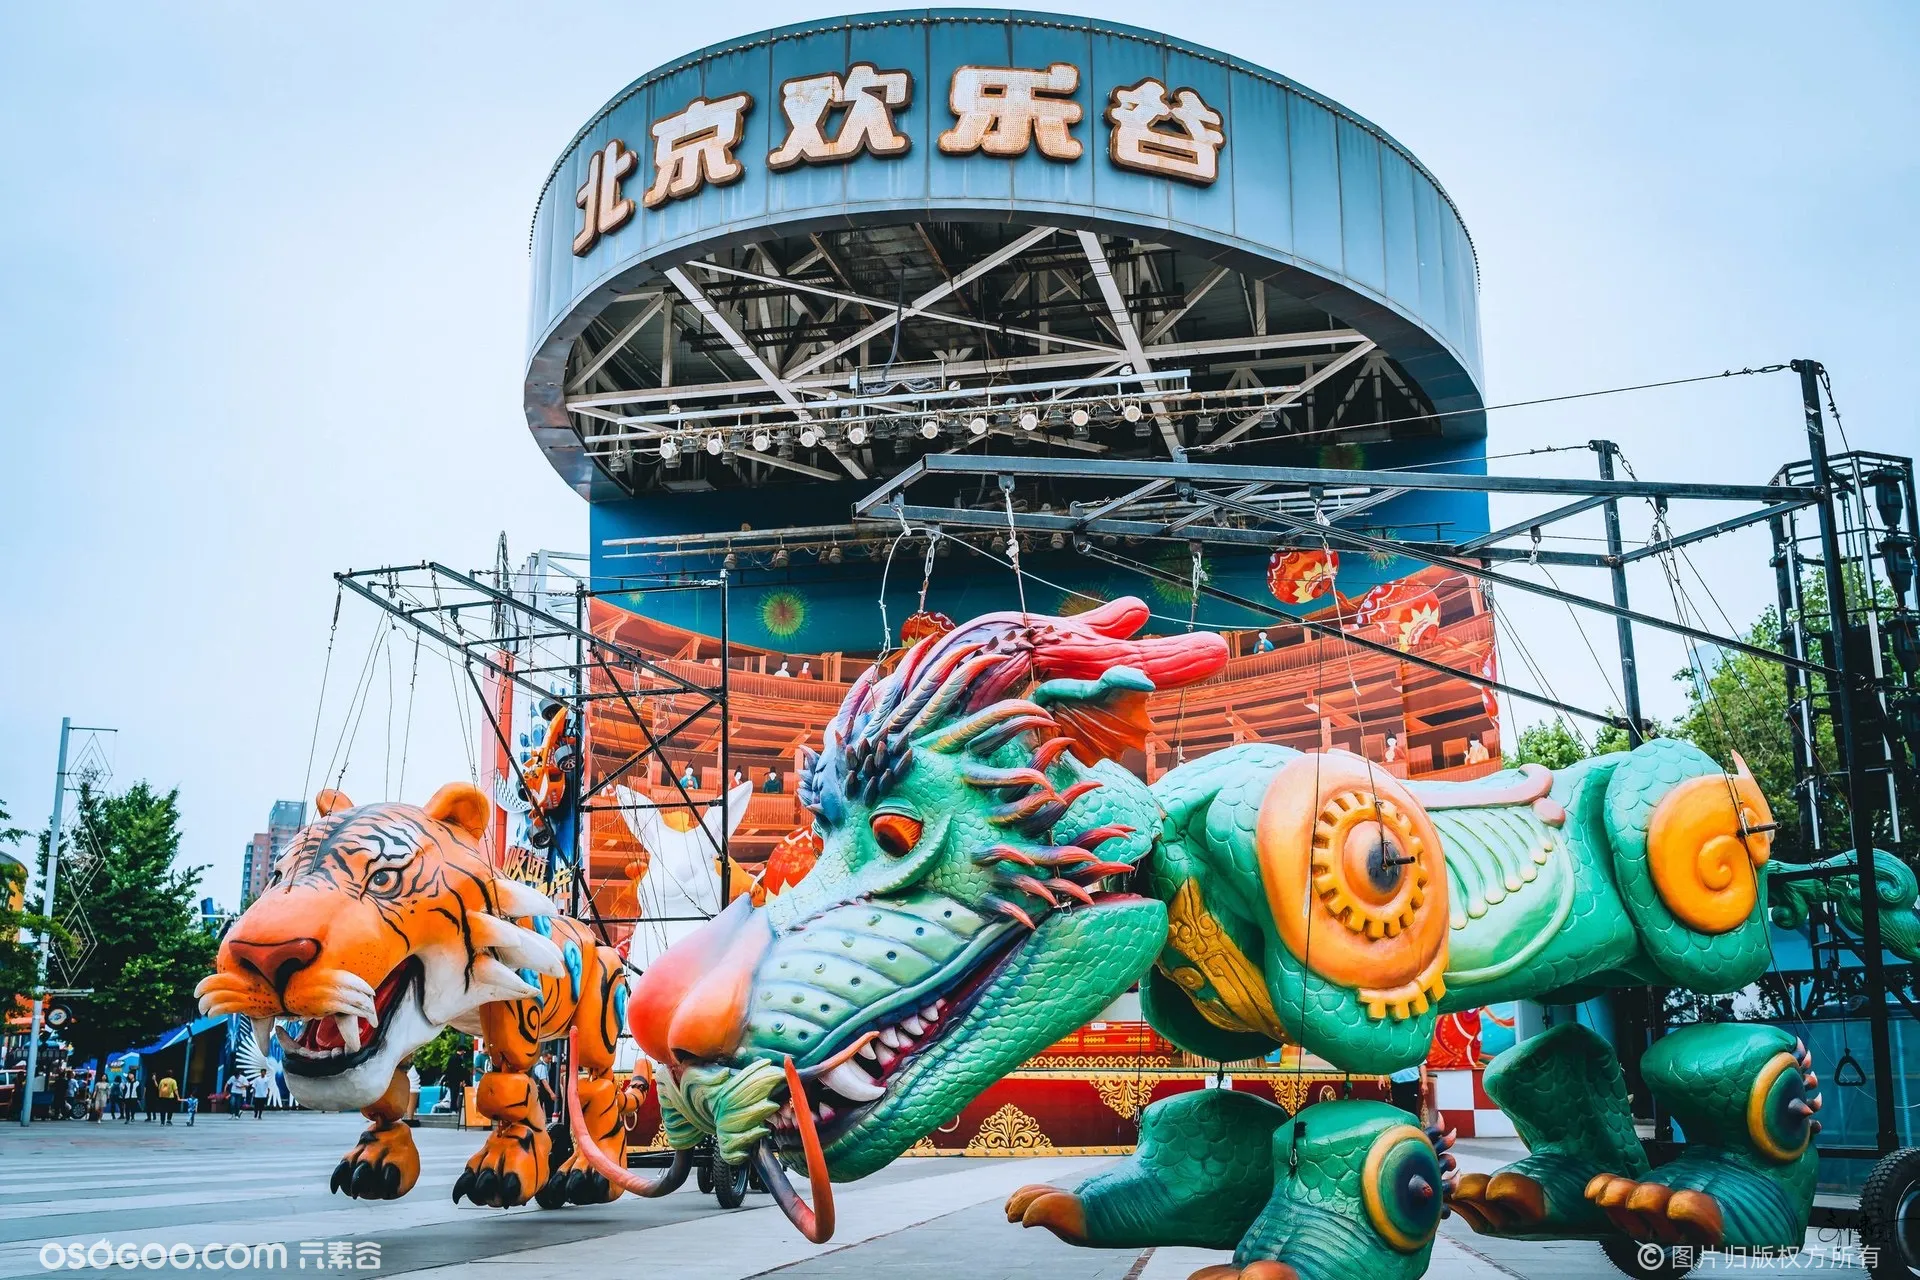 北京欢乐谷超级儿童节——巨型木偶大马戏